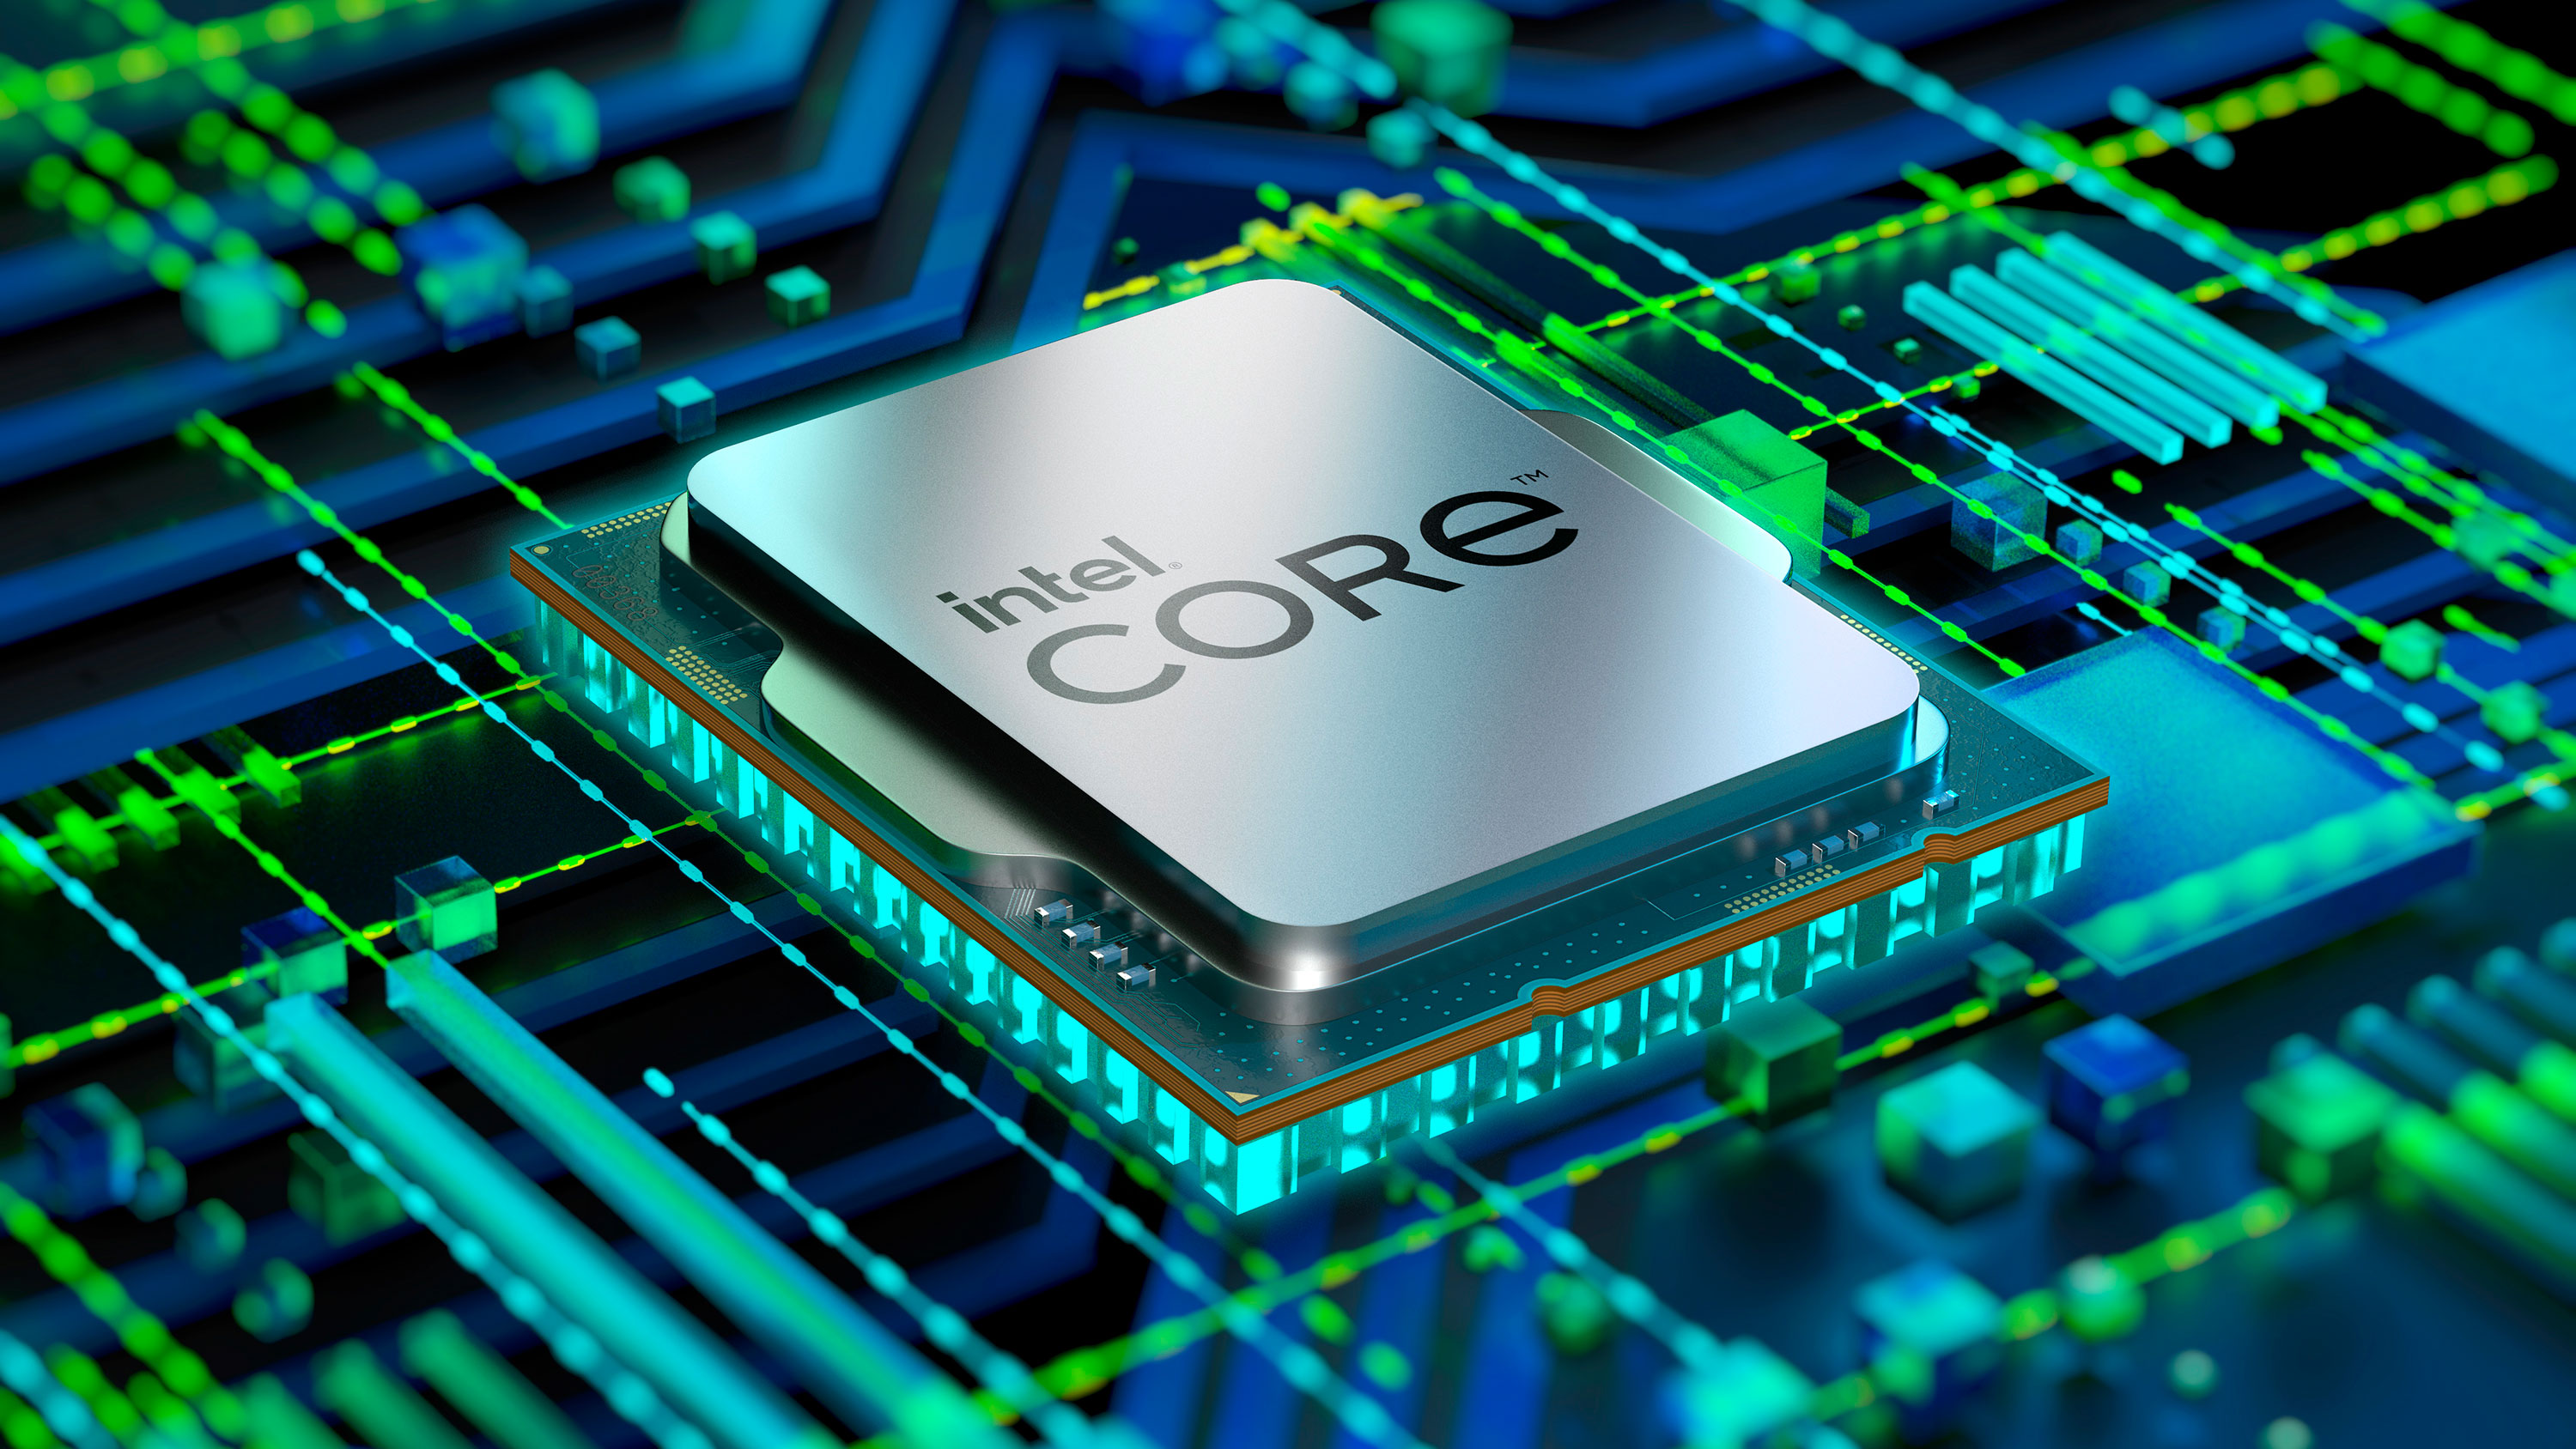 Procesor Intel Core i5-12500 je speciln uren pro zkladn desky s patic LGA1700 z ady Intel 600 Series, kdy se pyn 6 jdry s maximlnm taktem a 4,6 GHz diky TB 2.0 technologii.